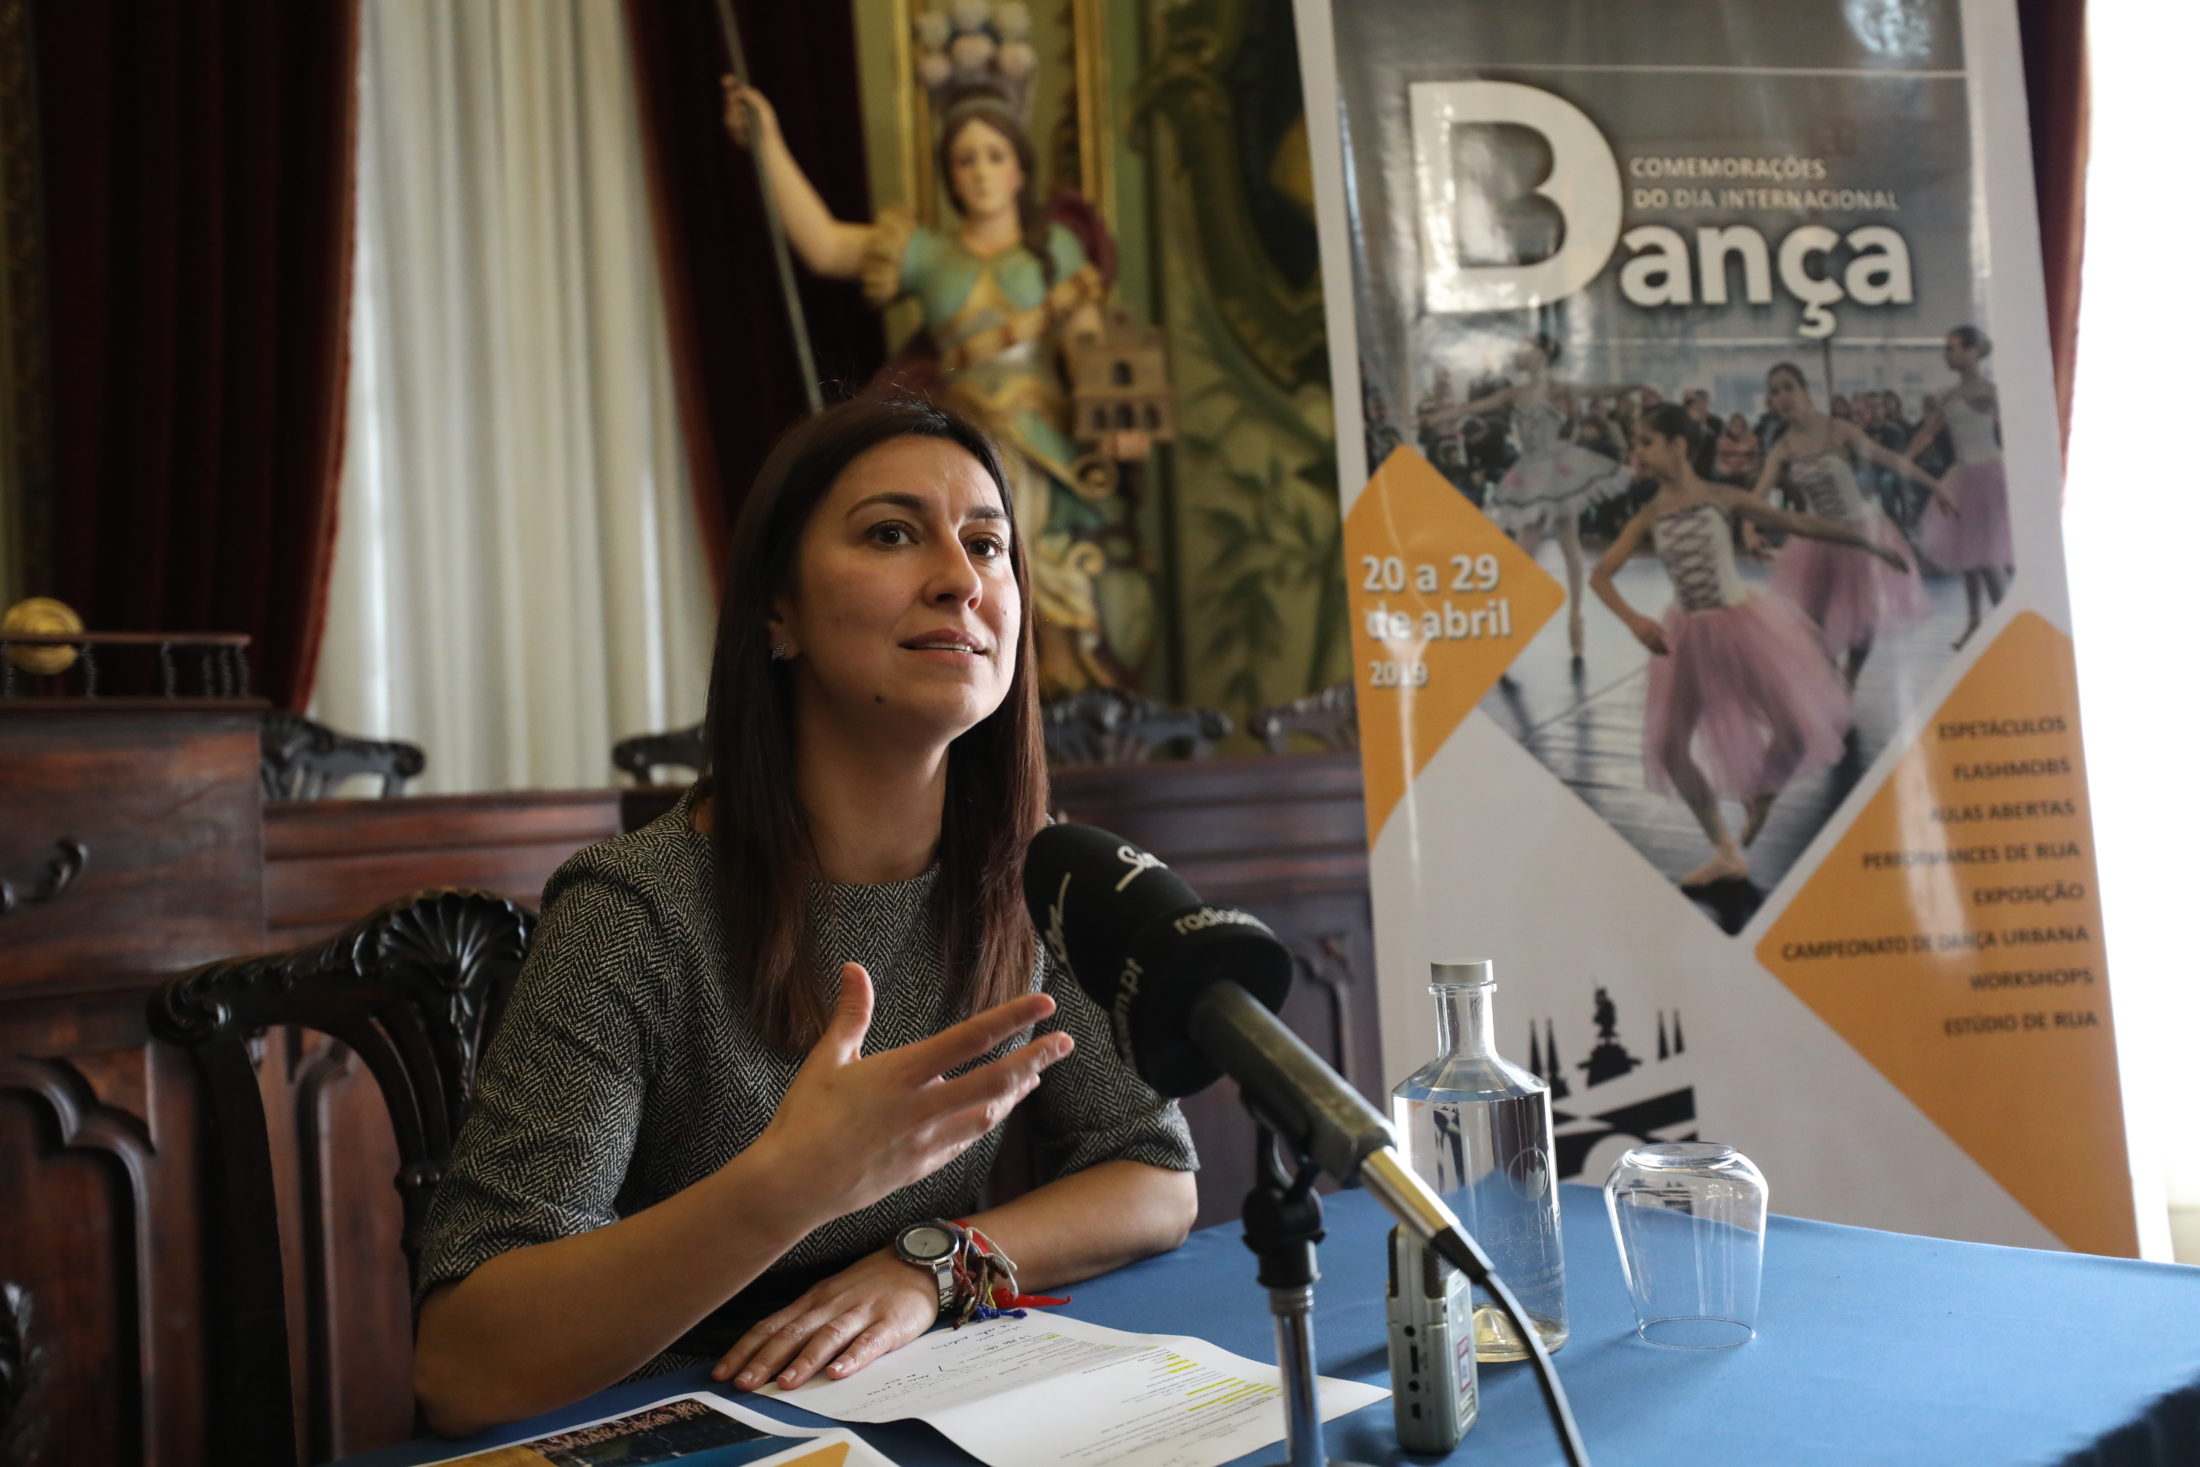 Braga oferece mais de 60 horas de programação dedicadas à Dança